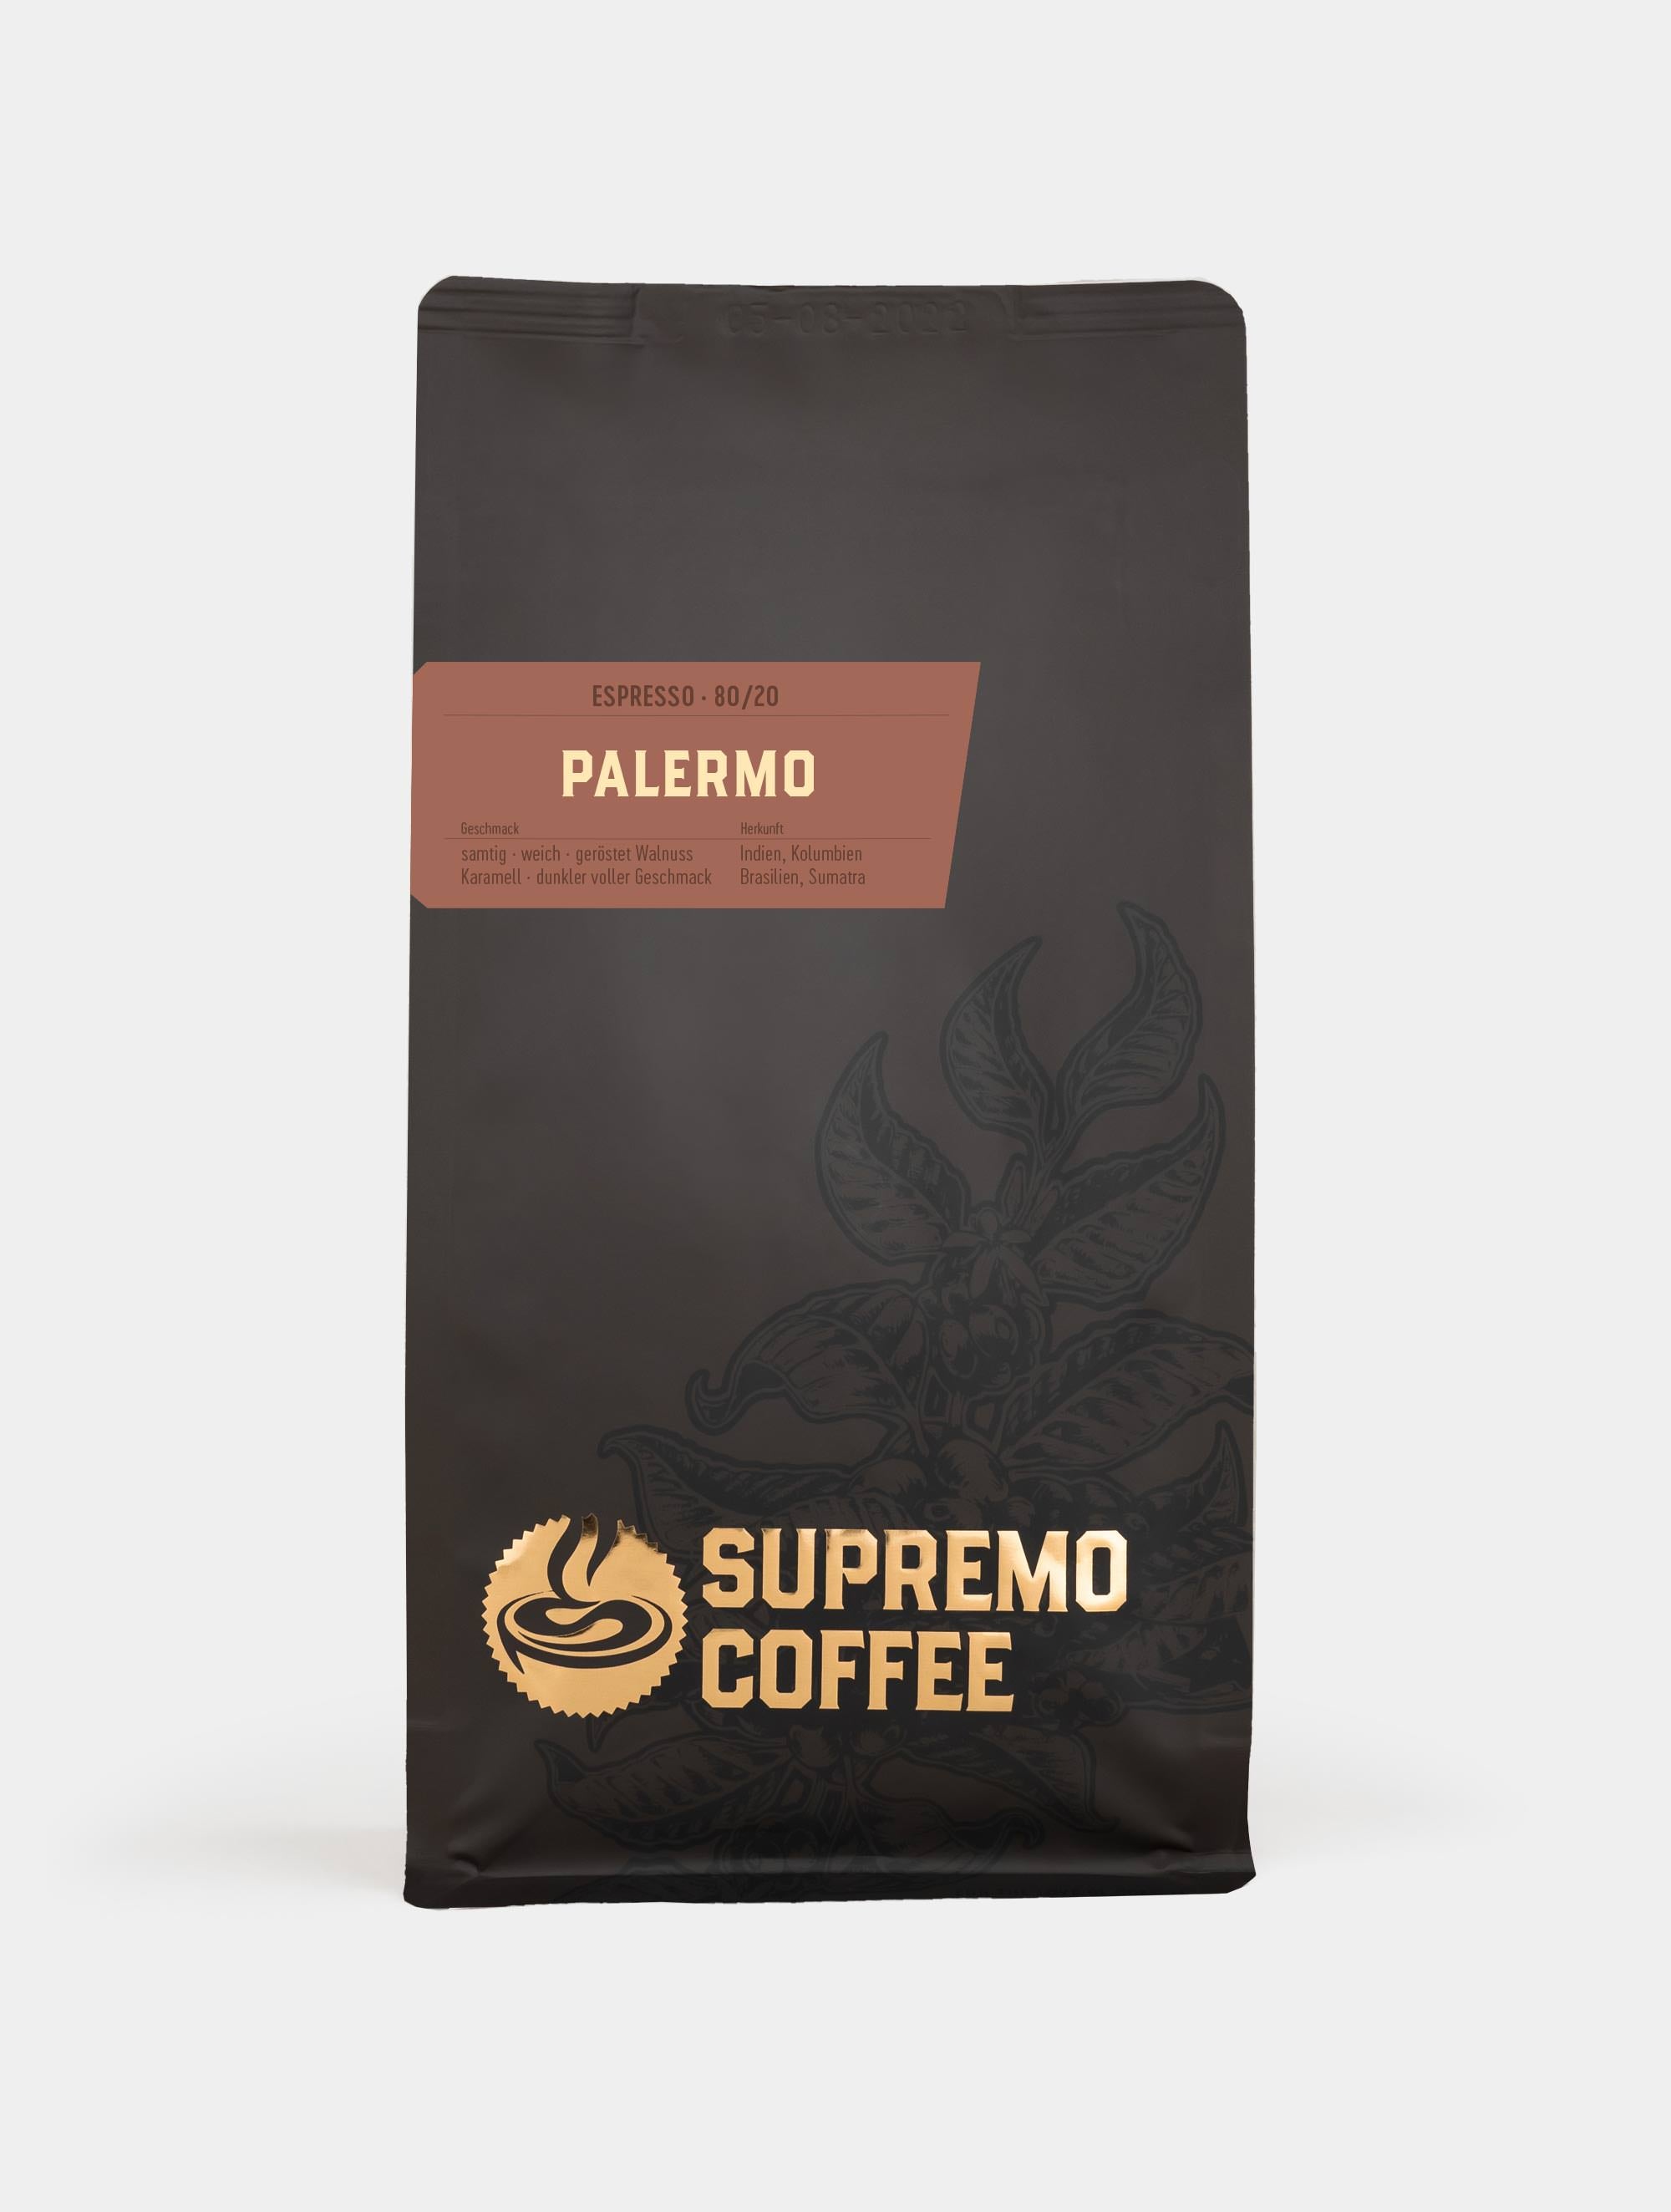 Palermo, Espresso 80/20 | SUPREMO Coffee